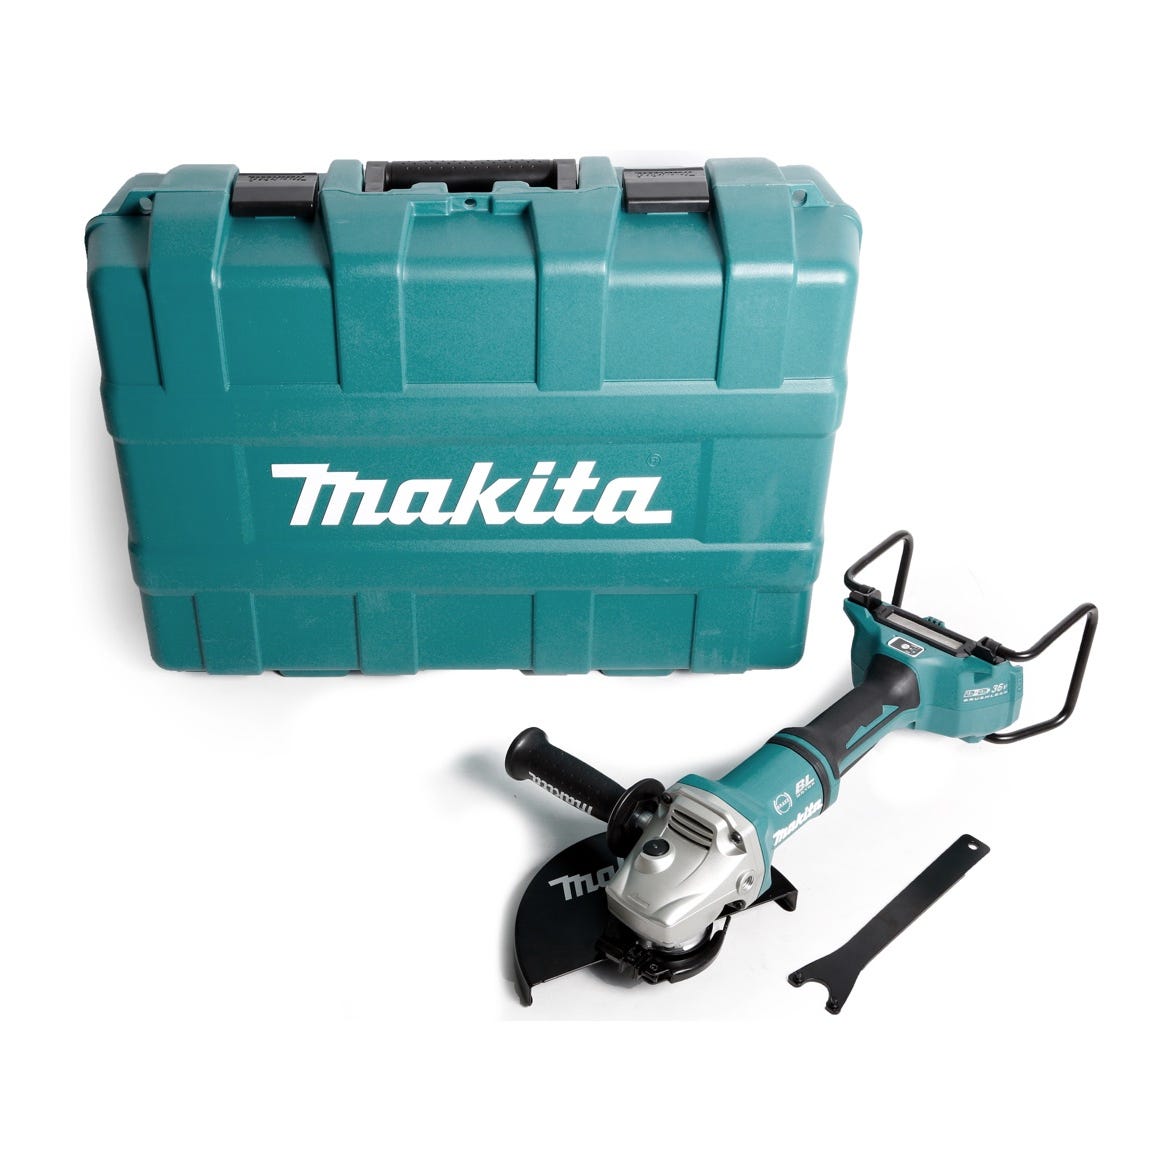 Makita DGA 901 ZKU2 36 V Meuleuse d'angle sans fil 230 mm + Coffret de transport - sans accessoires, sans Batterie, sans Chargeur 0